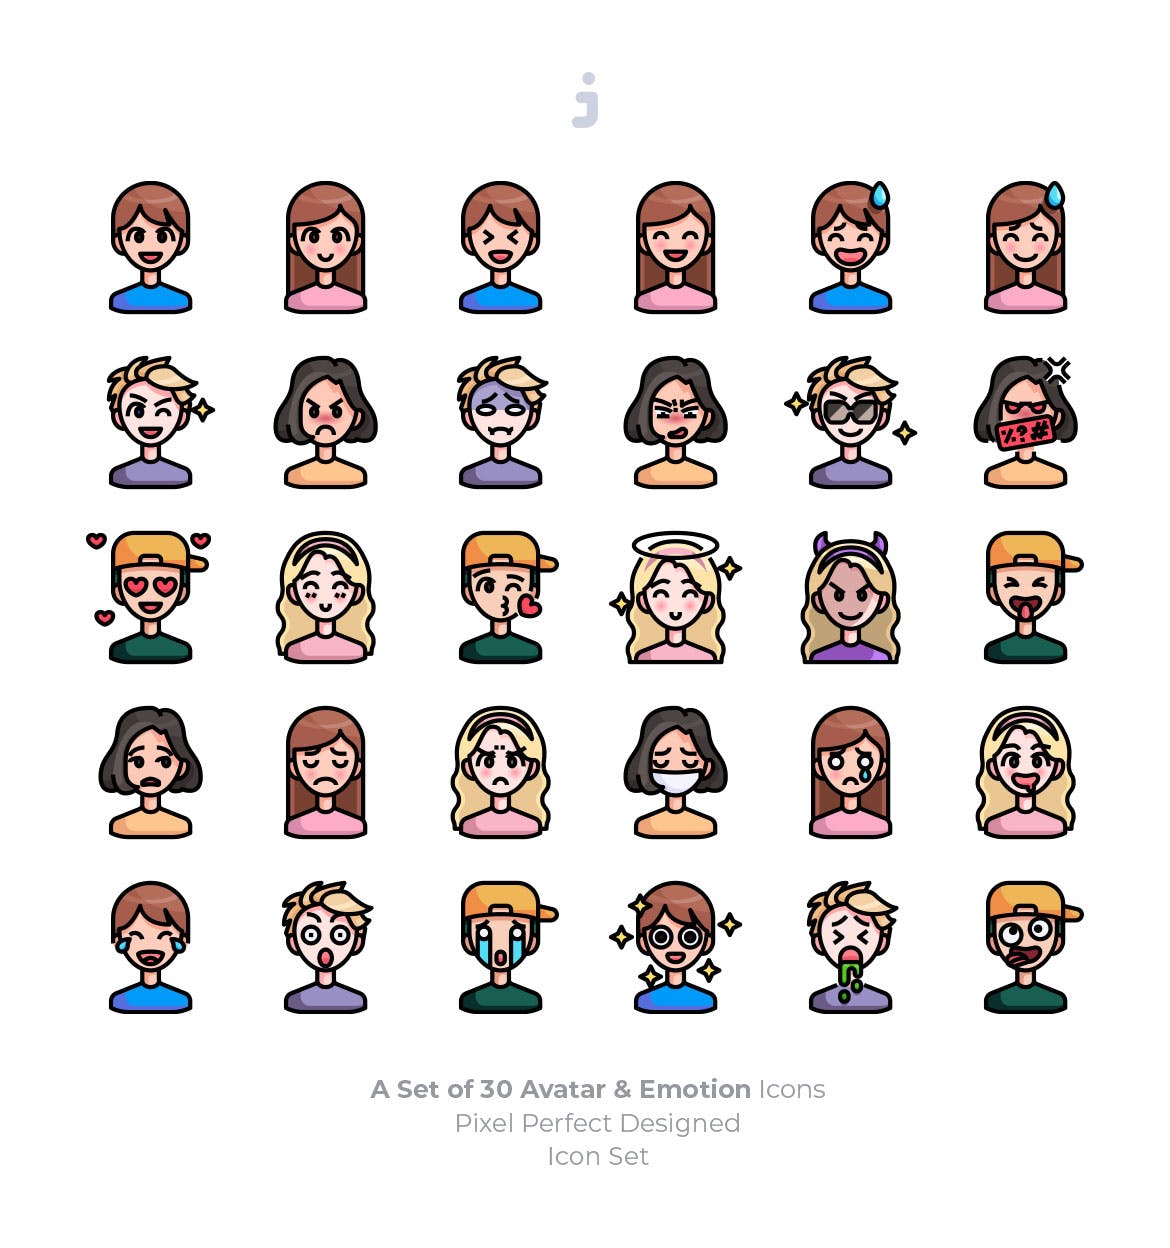 30枚彩色人物头像&表情矢量素材库精选图标 30 Avatar and Emotion Icons插图(1)